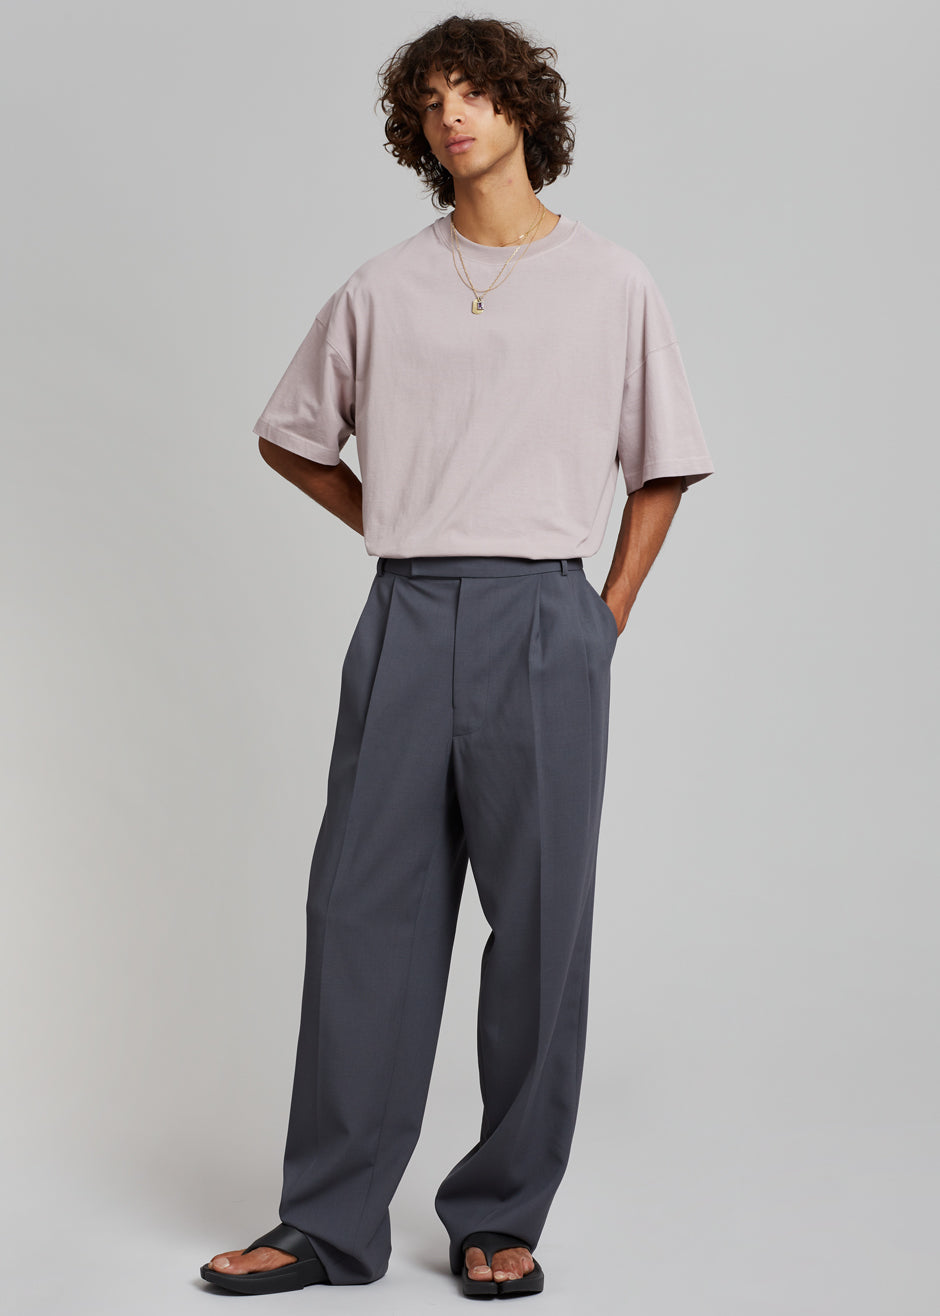 Beo Suit Pants - Charcoal – Frankie Shop Europe